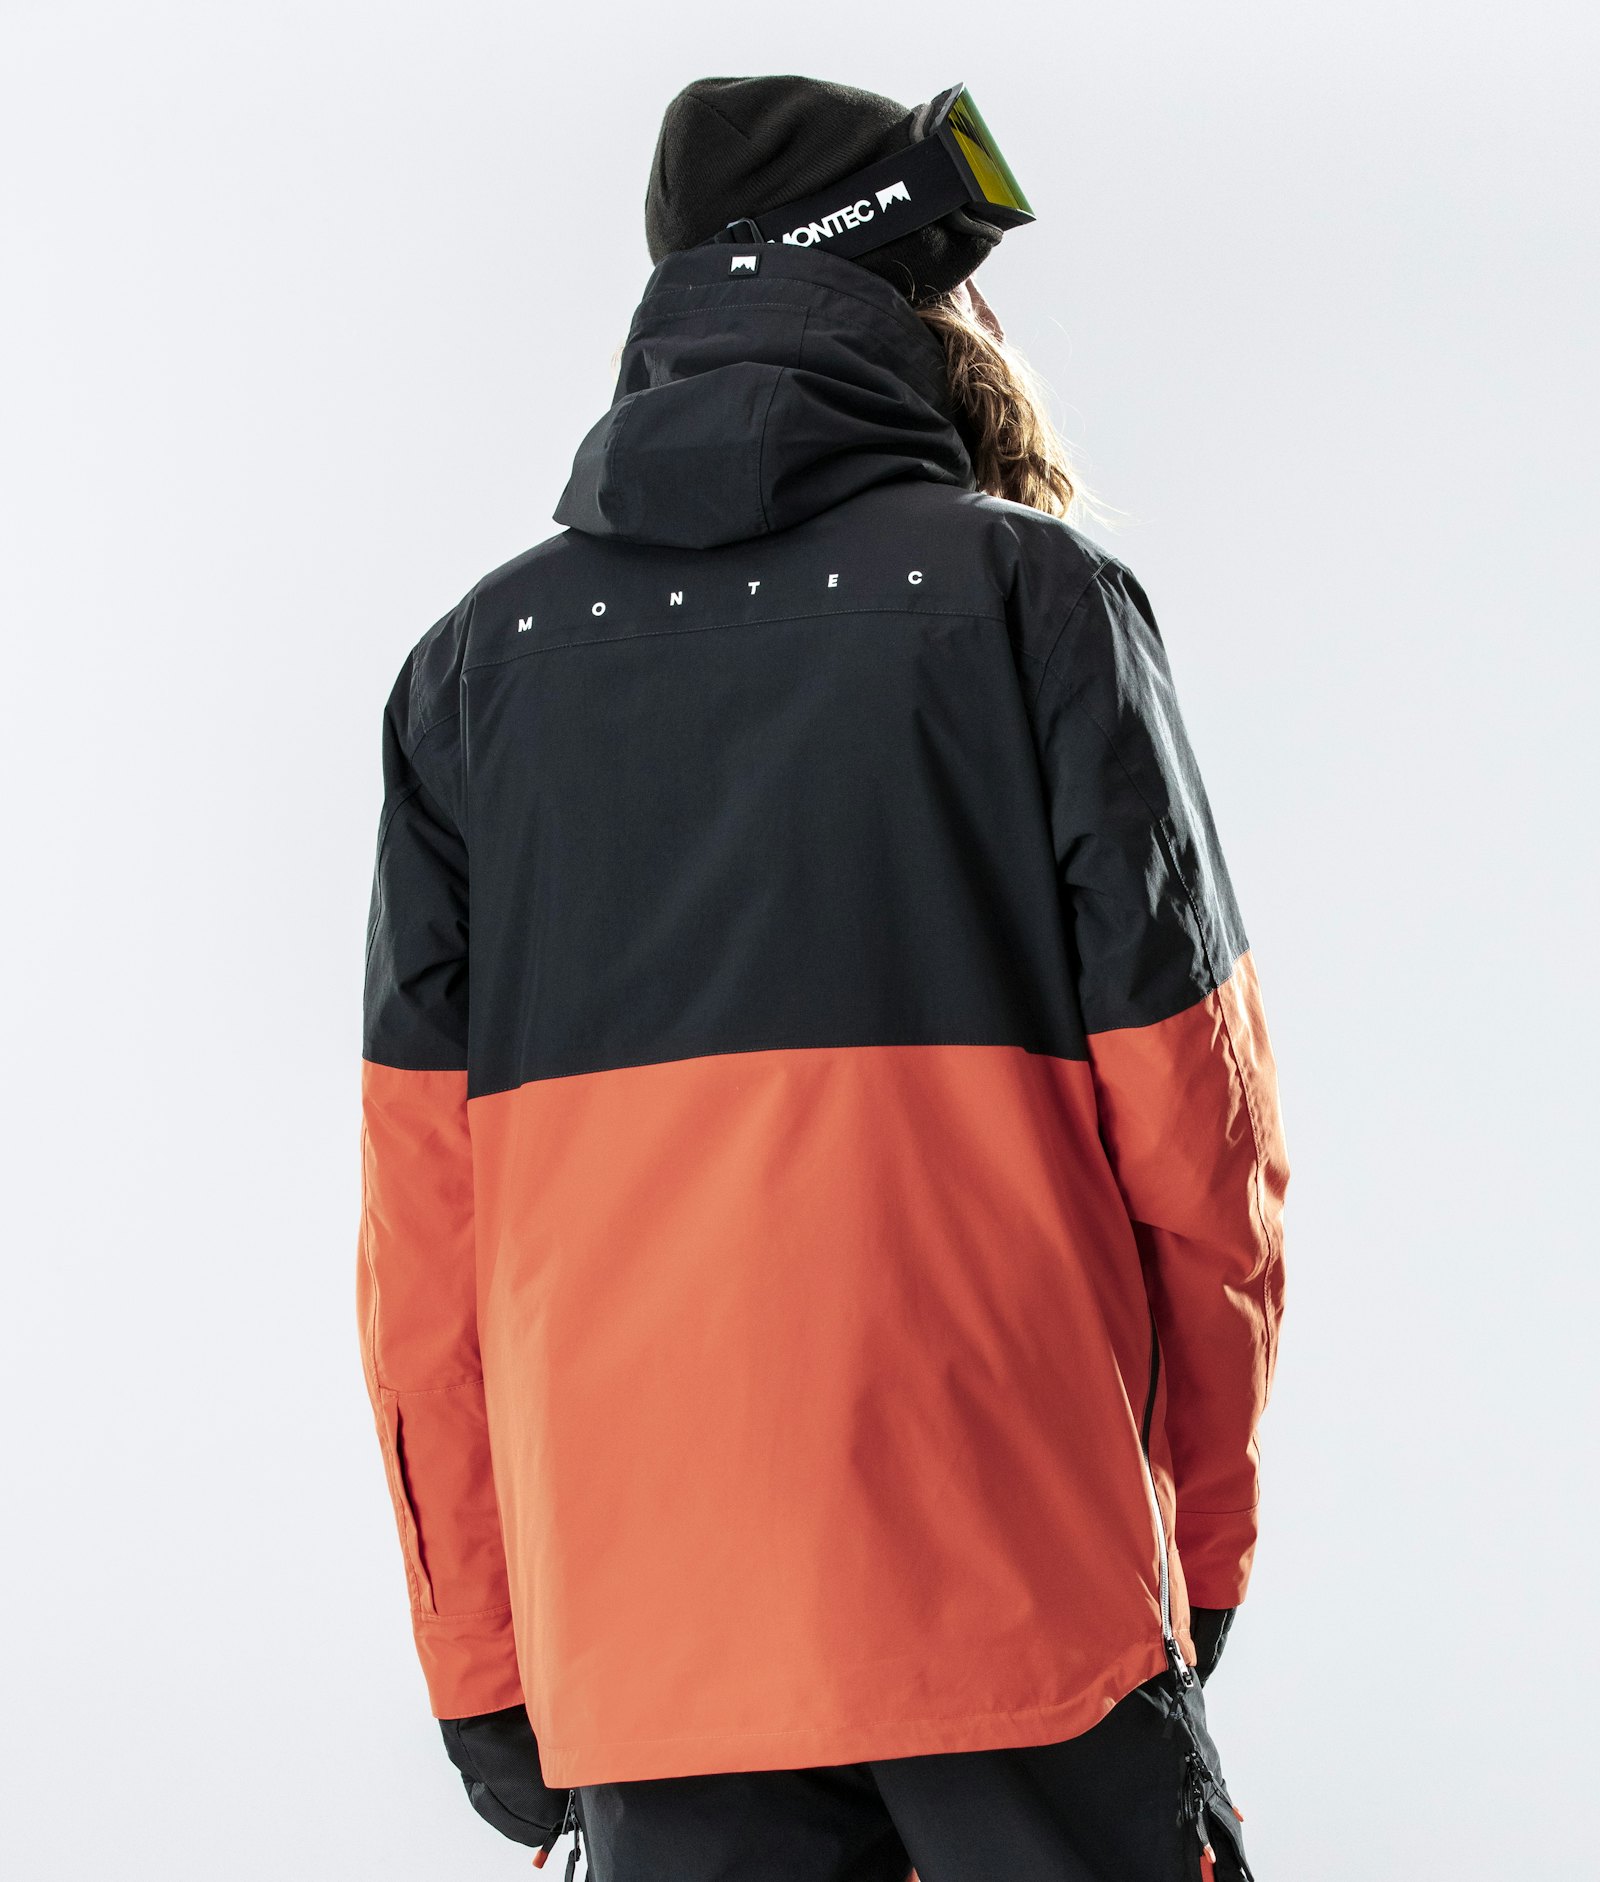 Montec Dune 2020 Ski Jacket Men Black/Orange